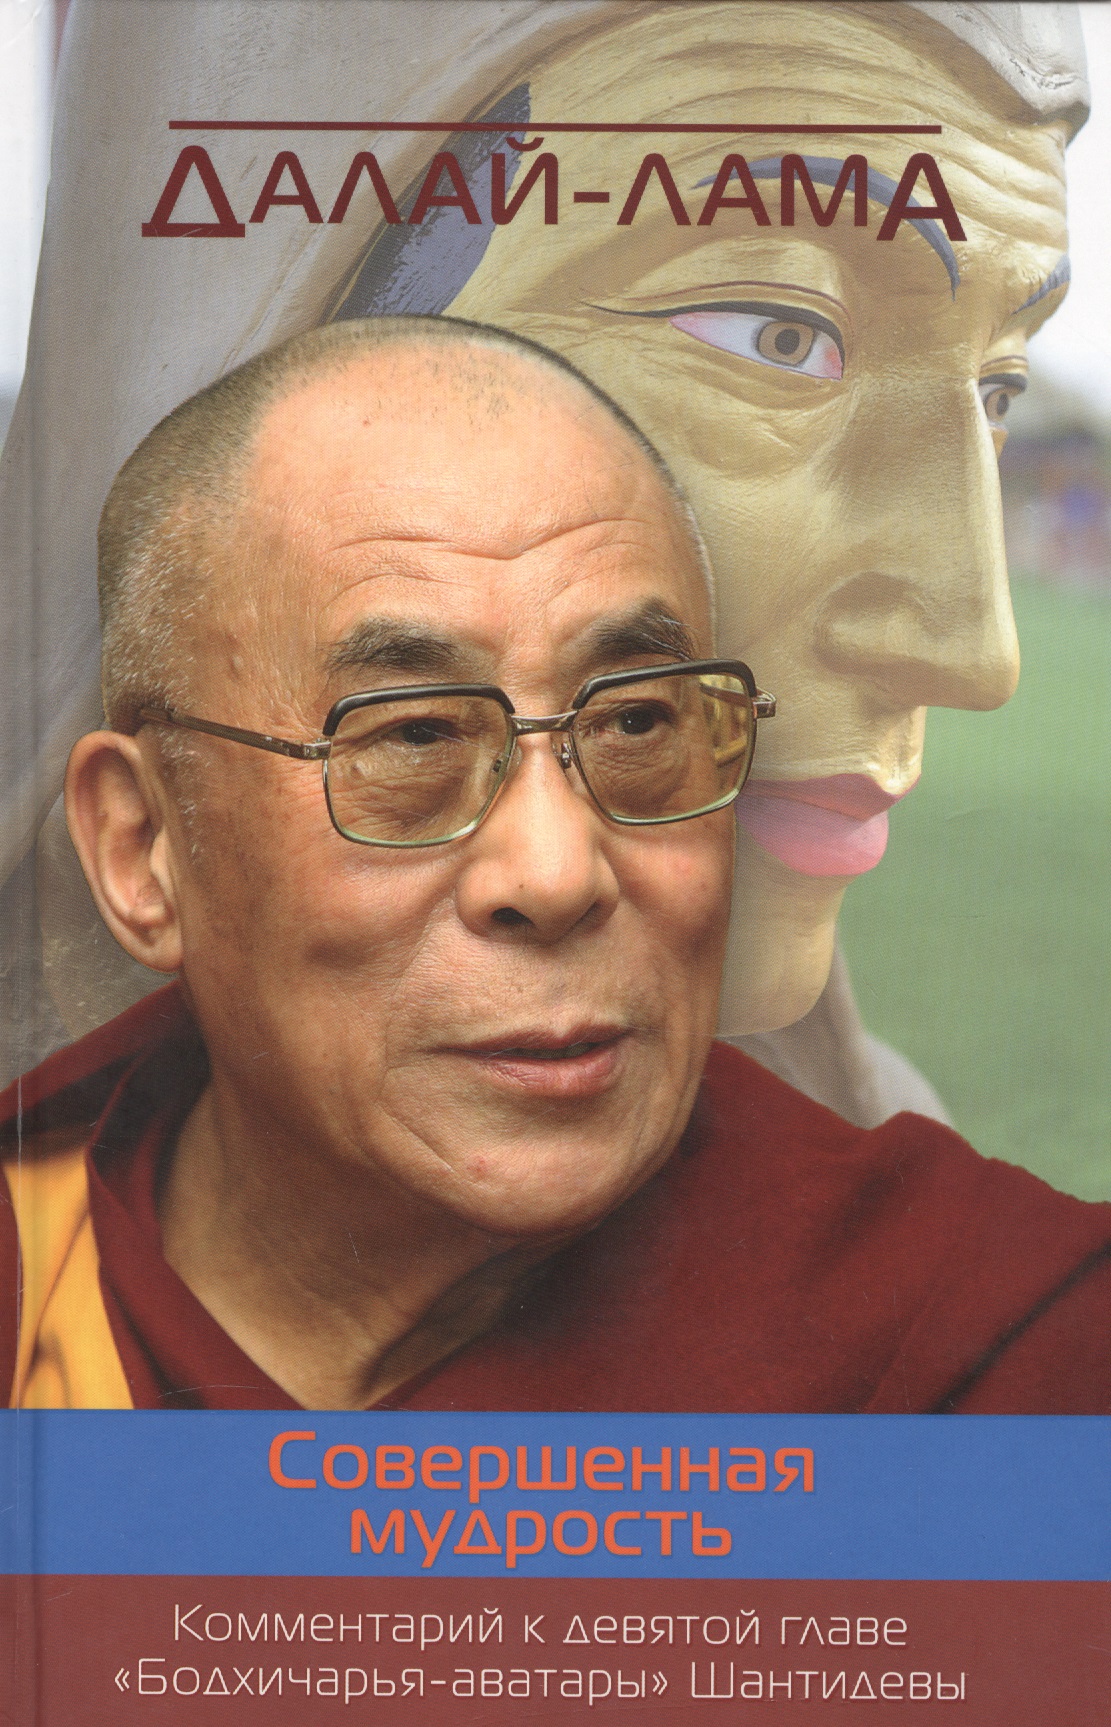 Жиронкина Ю., Далай-лама XIV Совершенная мудрость. Комментарий к девятой главе «Бодхичарья-аватары» Шантидевы